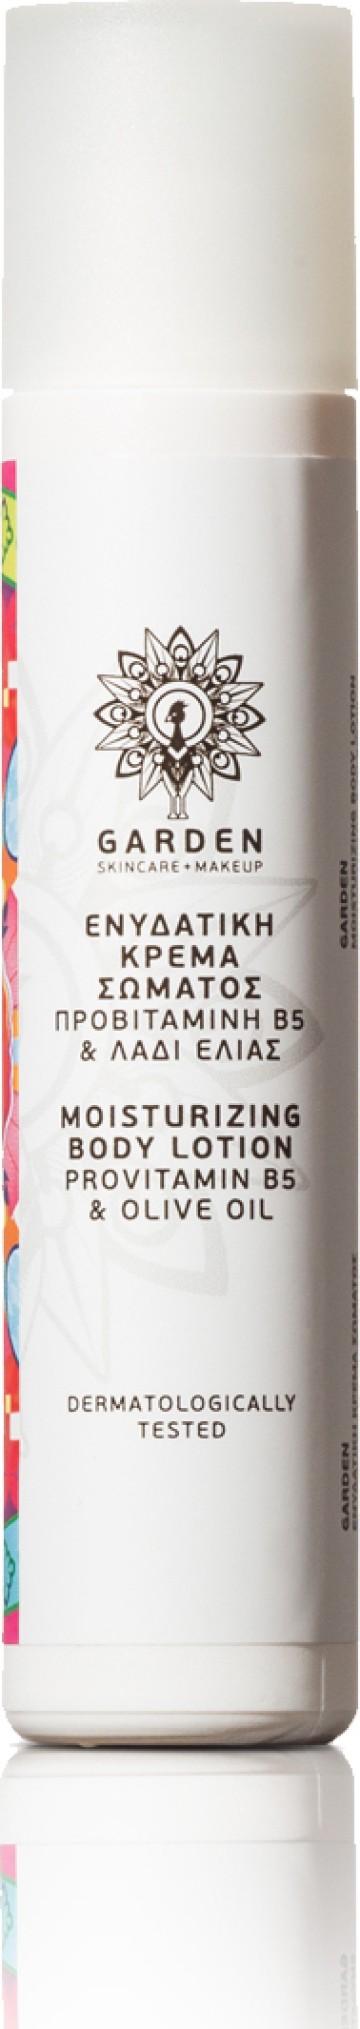 Увлажняющий крем для тела Garden с пробиотиком B5 и оливковым маслом 30 мл